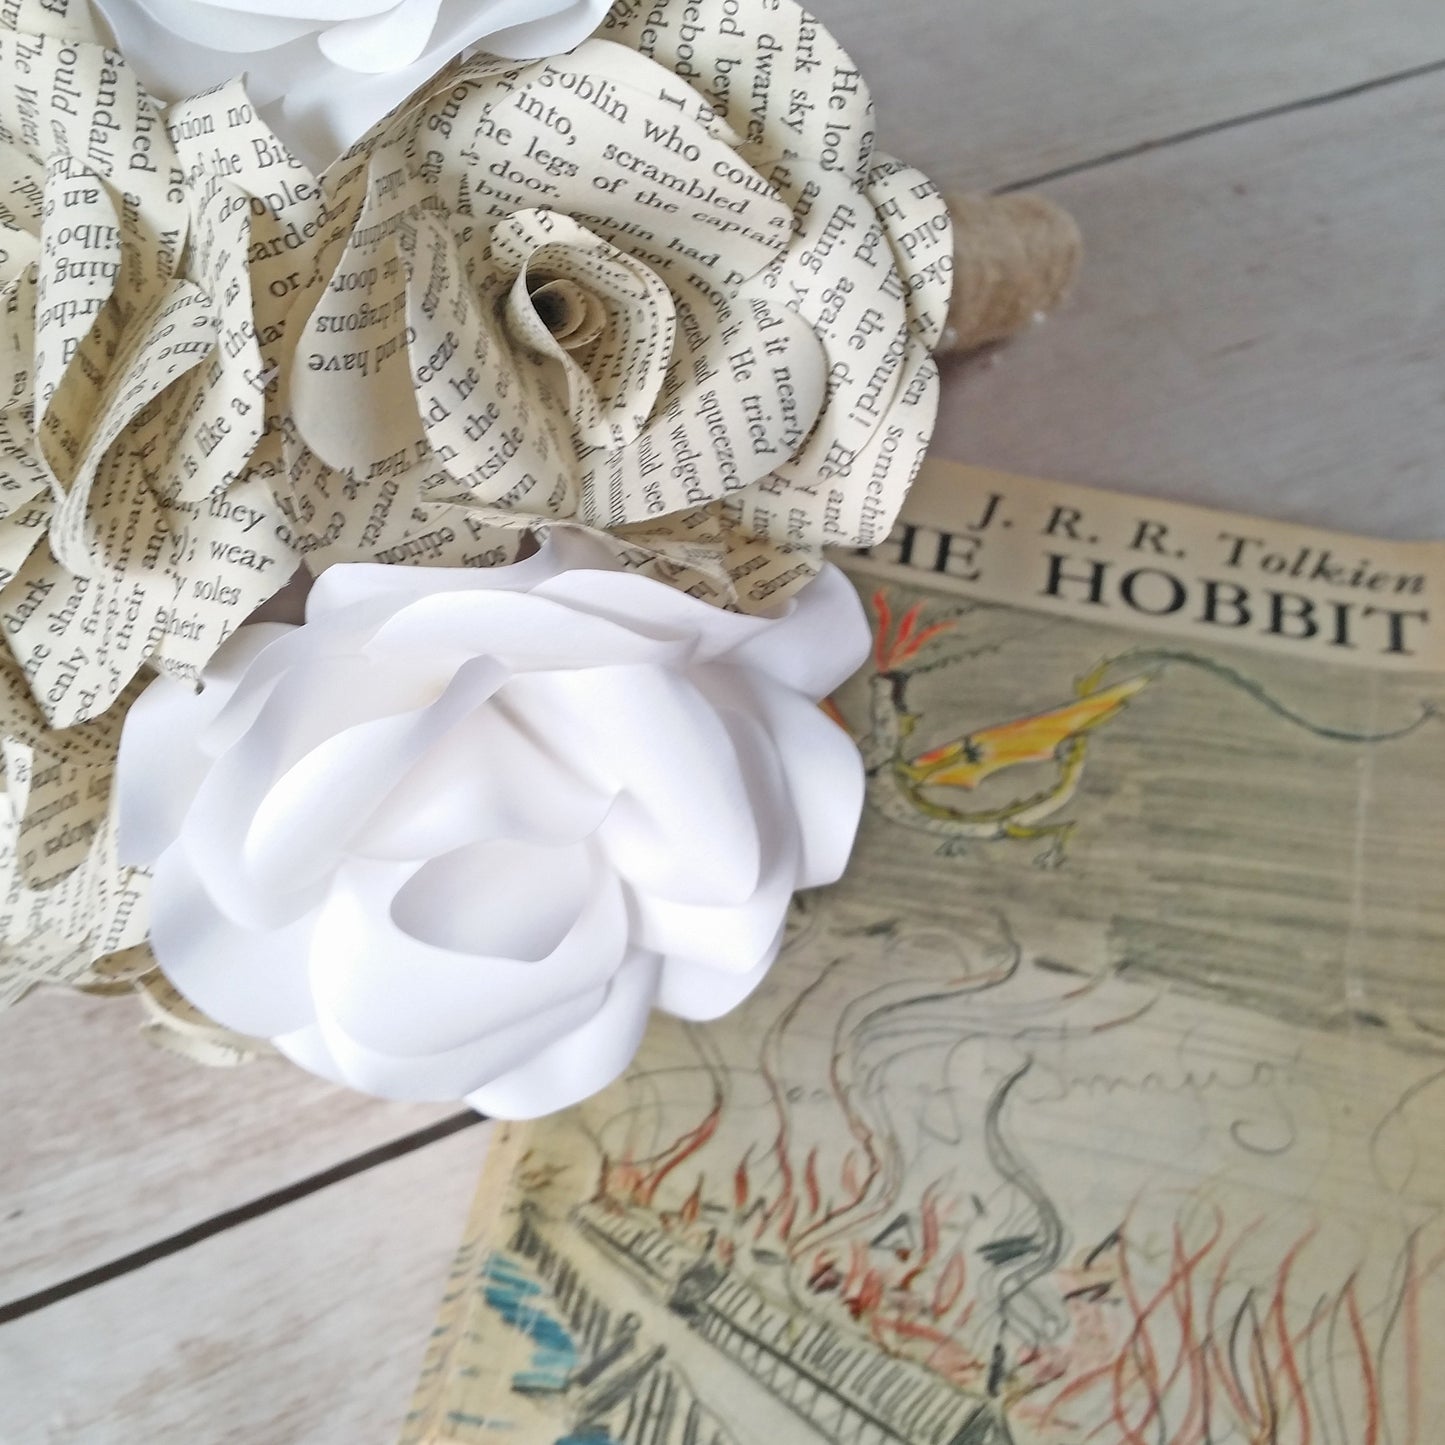 The Hobbit Paper Flower Bridal Bouquet